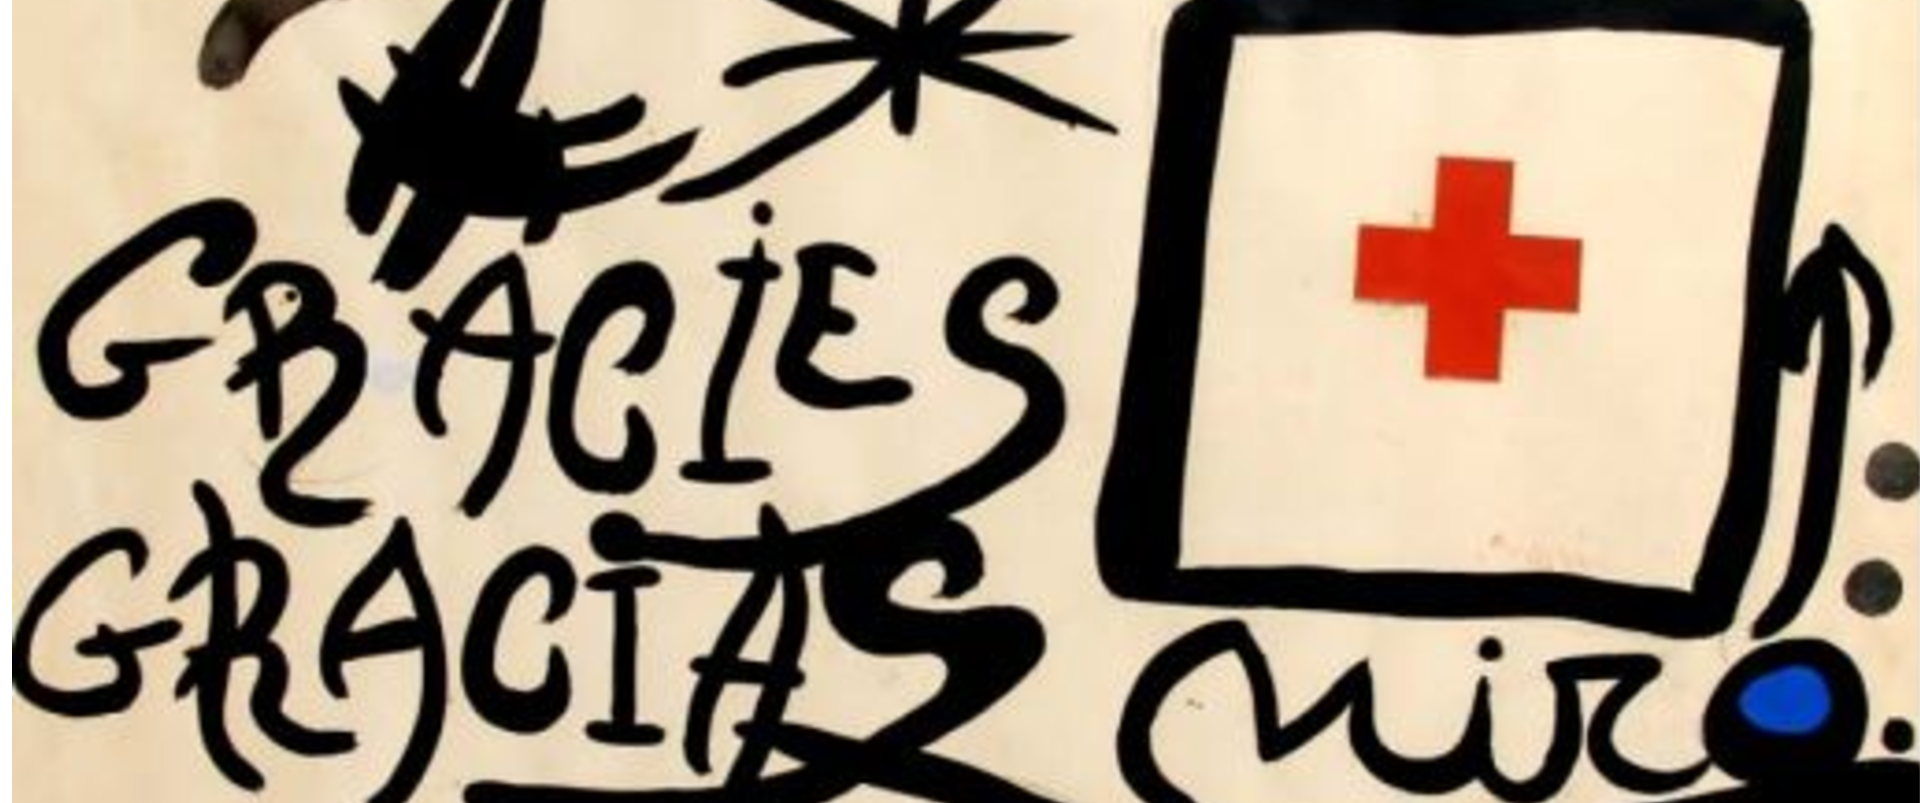 La historia de los dos Miró que nacen tras salvar una vida